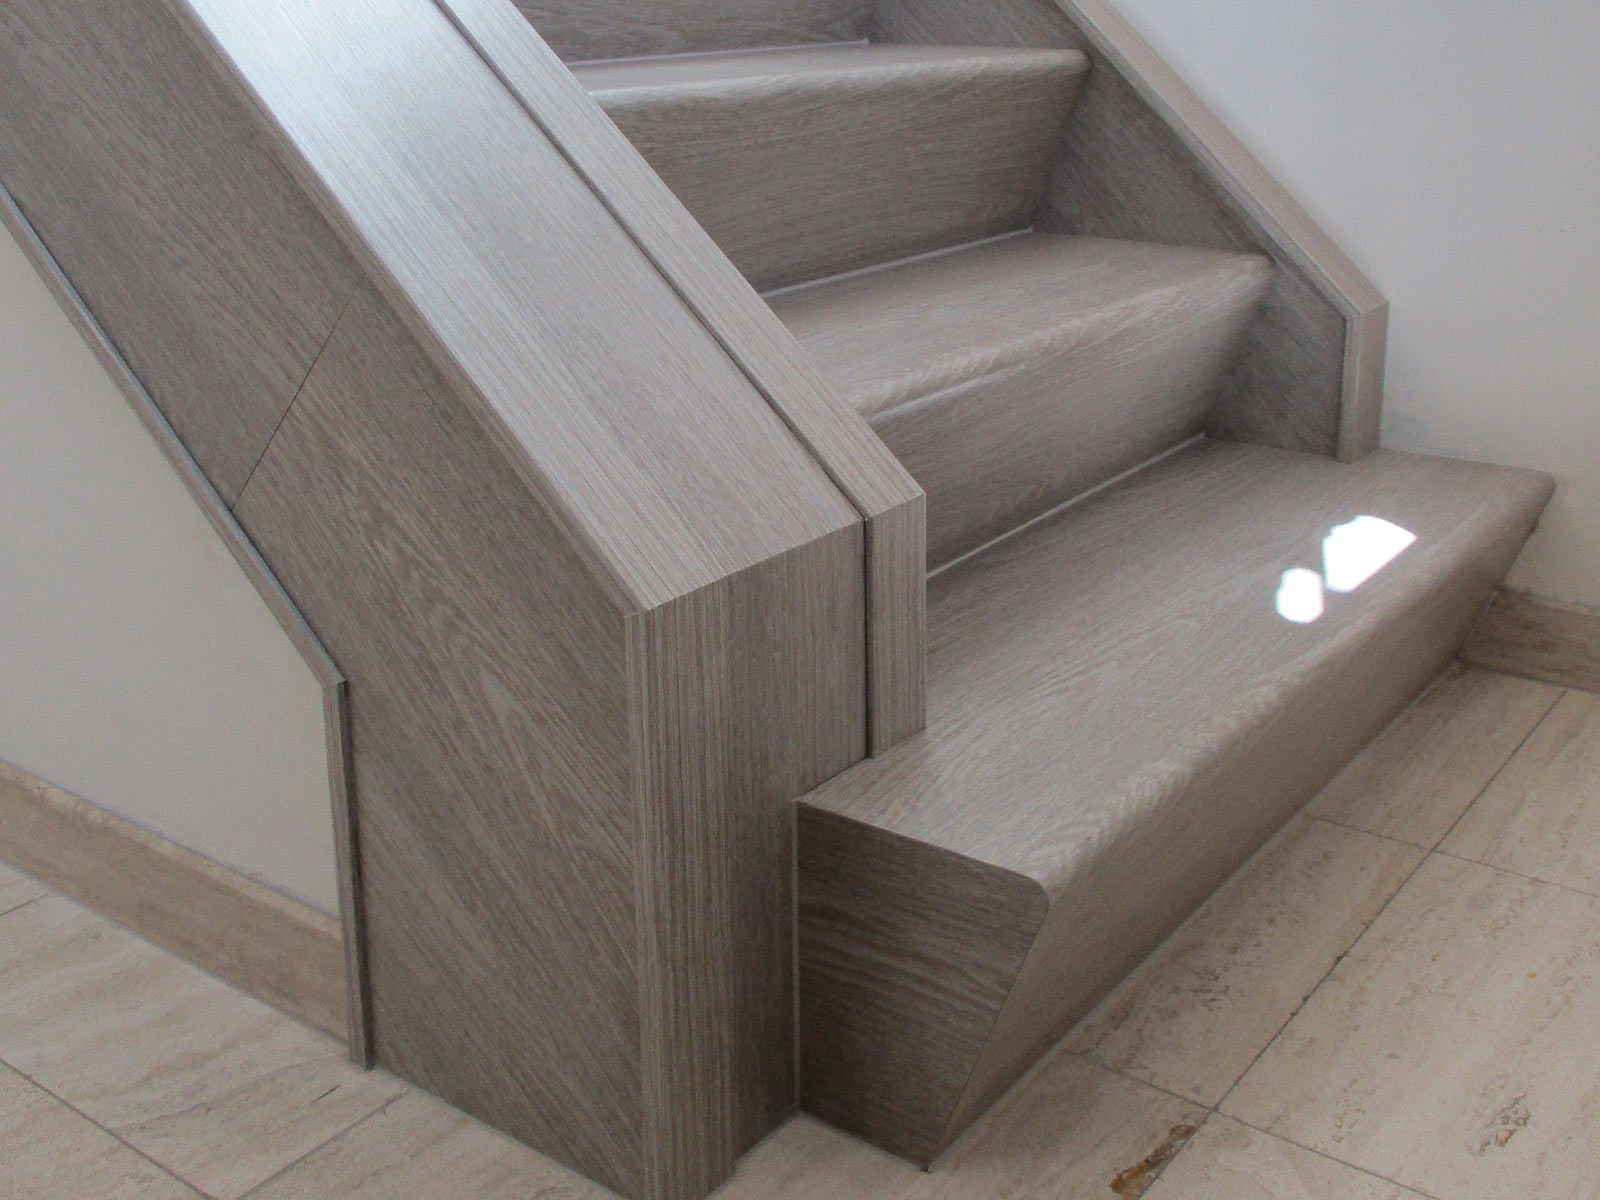 betonnen trap bekleden met hout